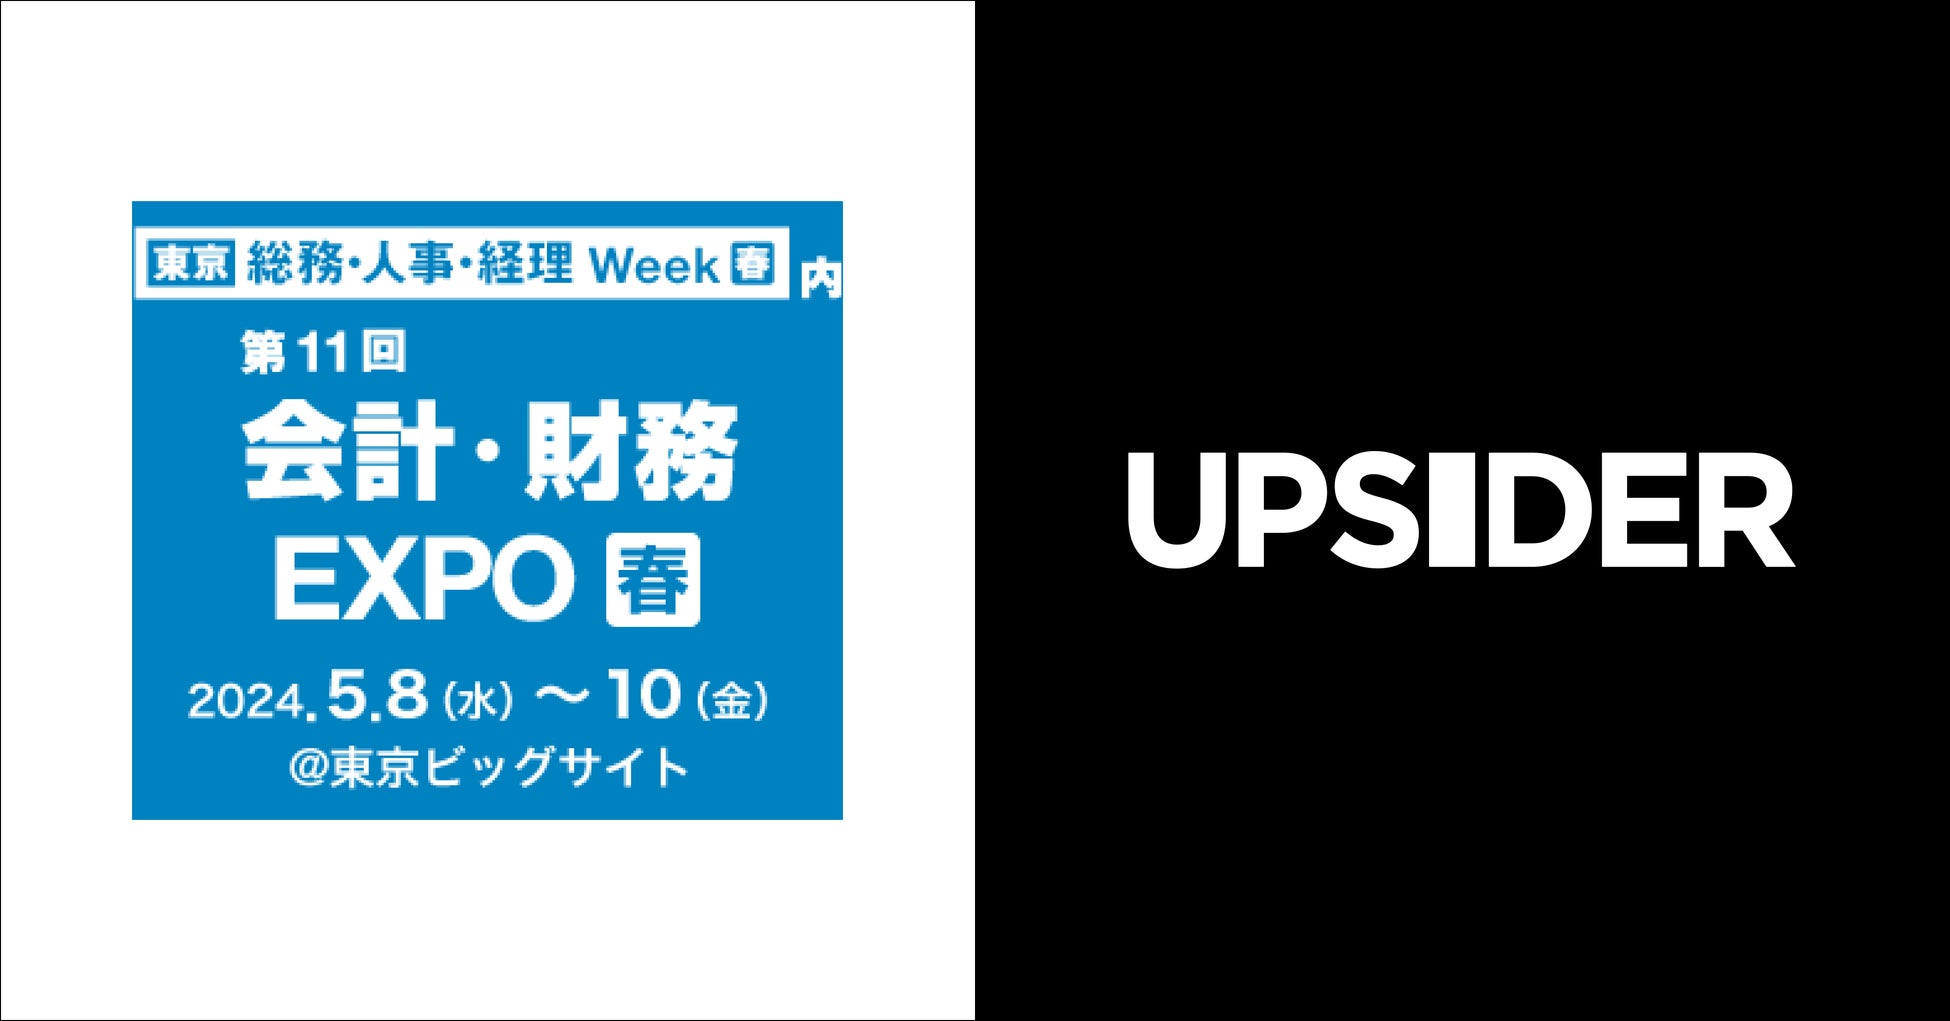 UPSIDER、「第21回【東京】 総務・人事・経理Week[春]」に出展 – 経理DXを加速するためのミニセミナーを開催